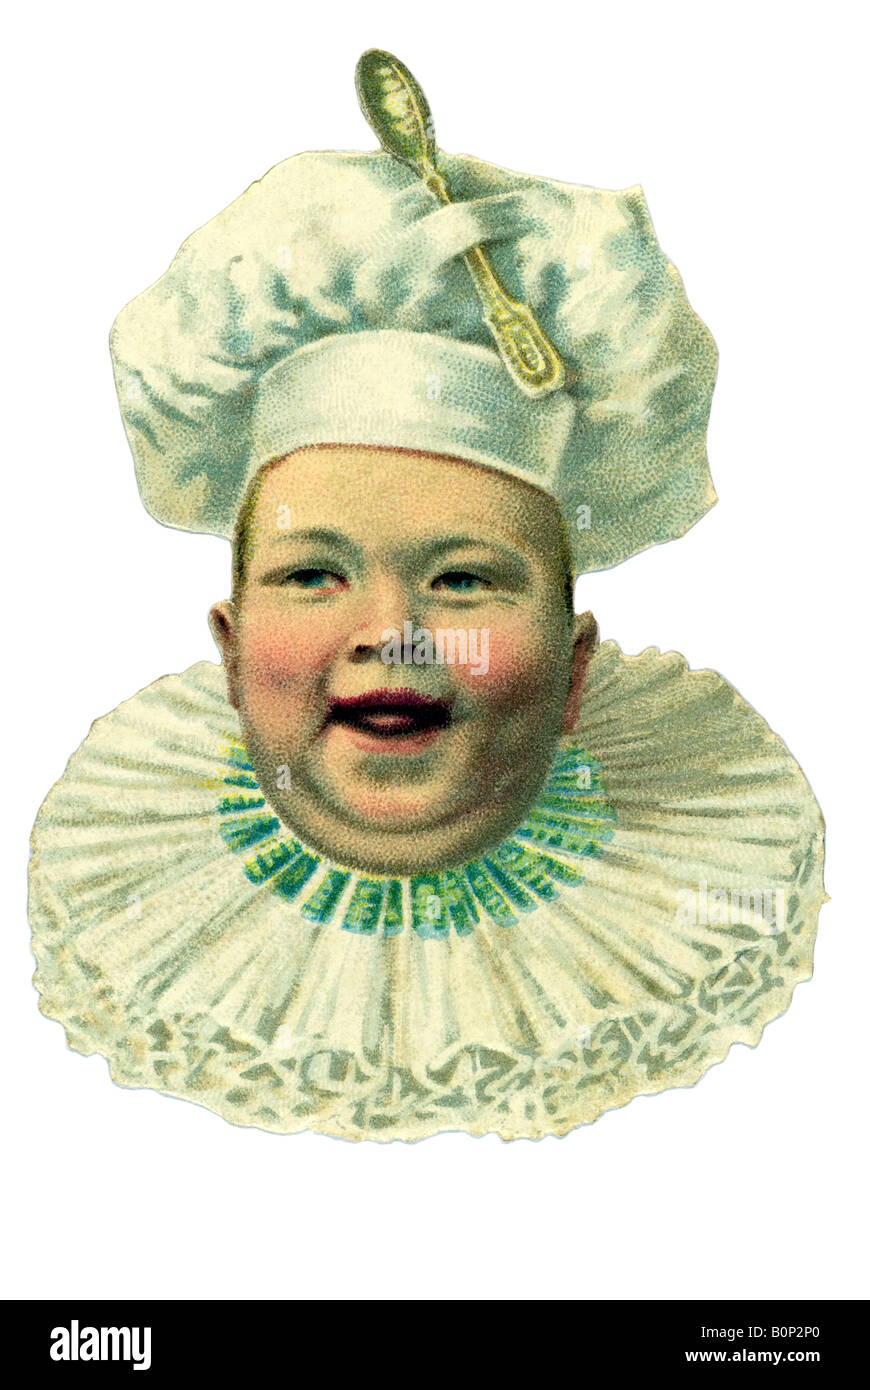 Tête de bébé émotionnelle ancienne bouche ouverte collier ruff fait sourire Toby Cook hat de la dentelle sur le dessus à la cuillère l'Allemagne du xixe siècle Banque D'Images